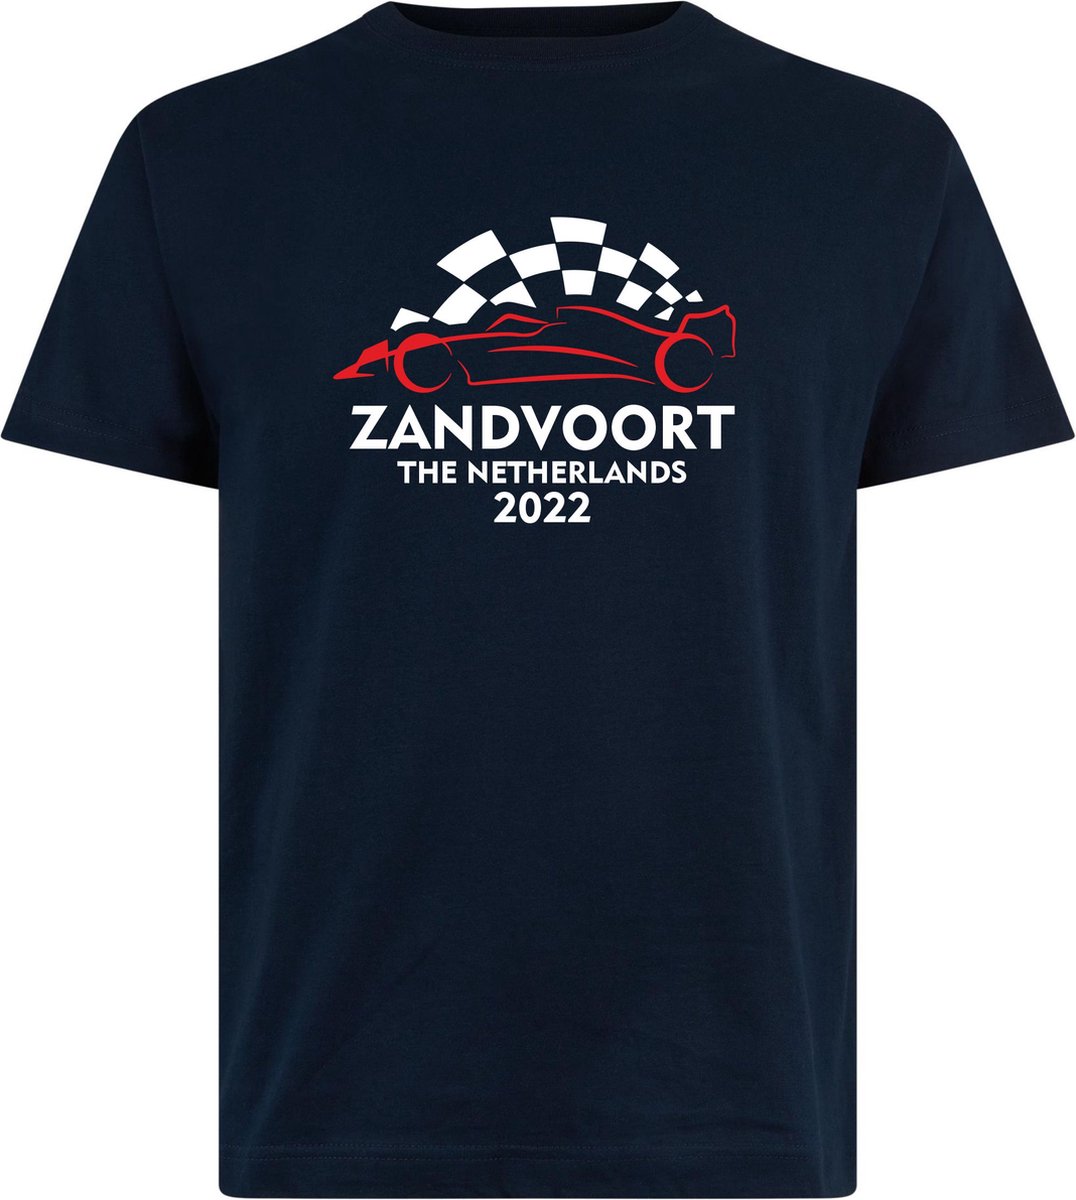 T-shirt Zandvoort 2022 met raceauto | Max Verstappen / Red Bull Racing / Formule 1 fan | Grand Prix Circuit Zandvoort | kleding shirt | Navy | maat XXL